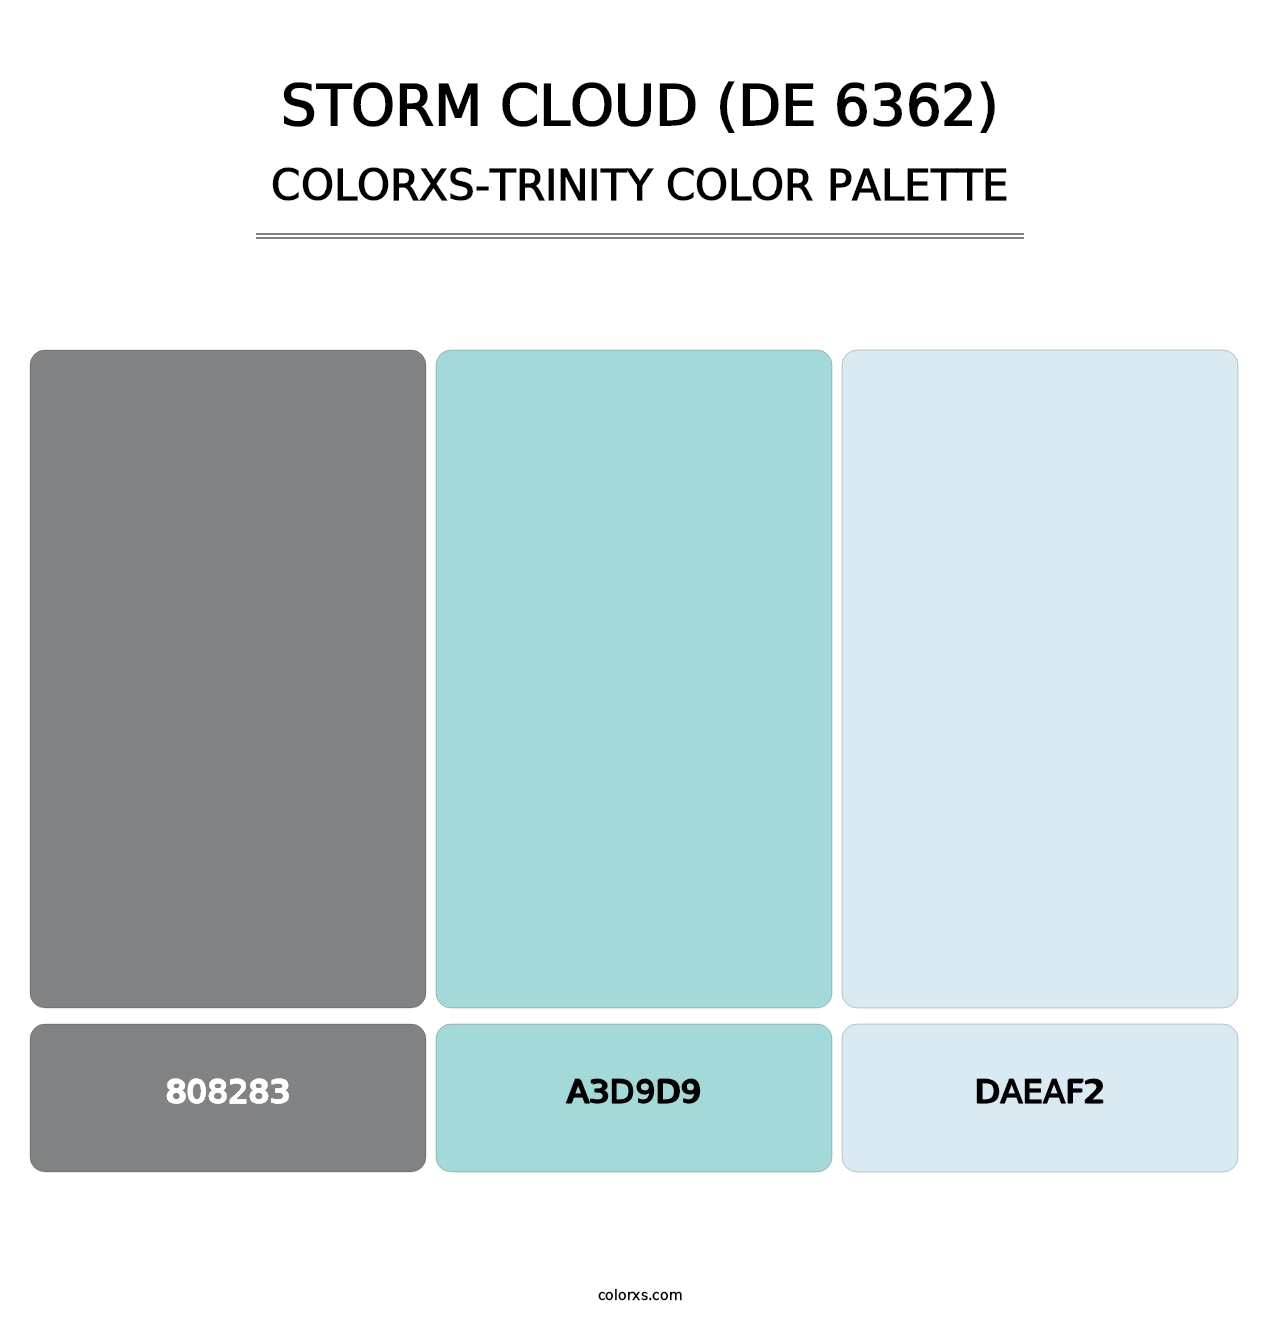 Storm Cloud (DE 6362) - Colorxs Trinity Palette